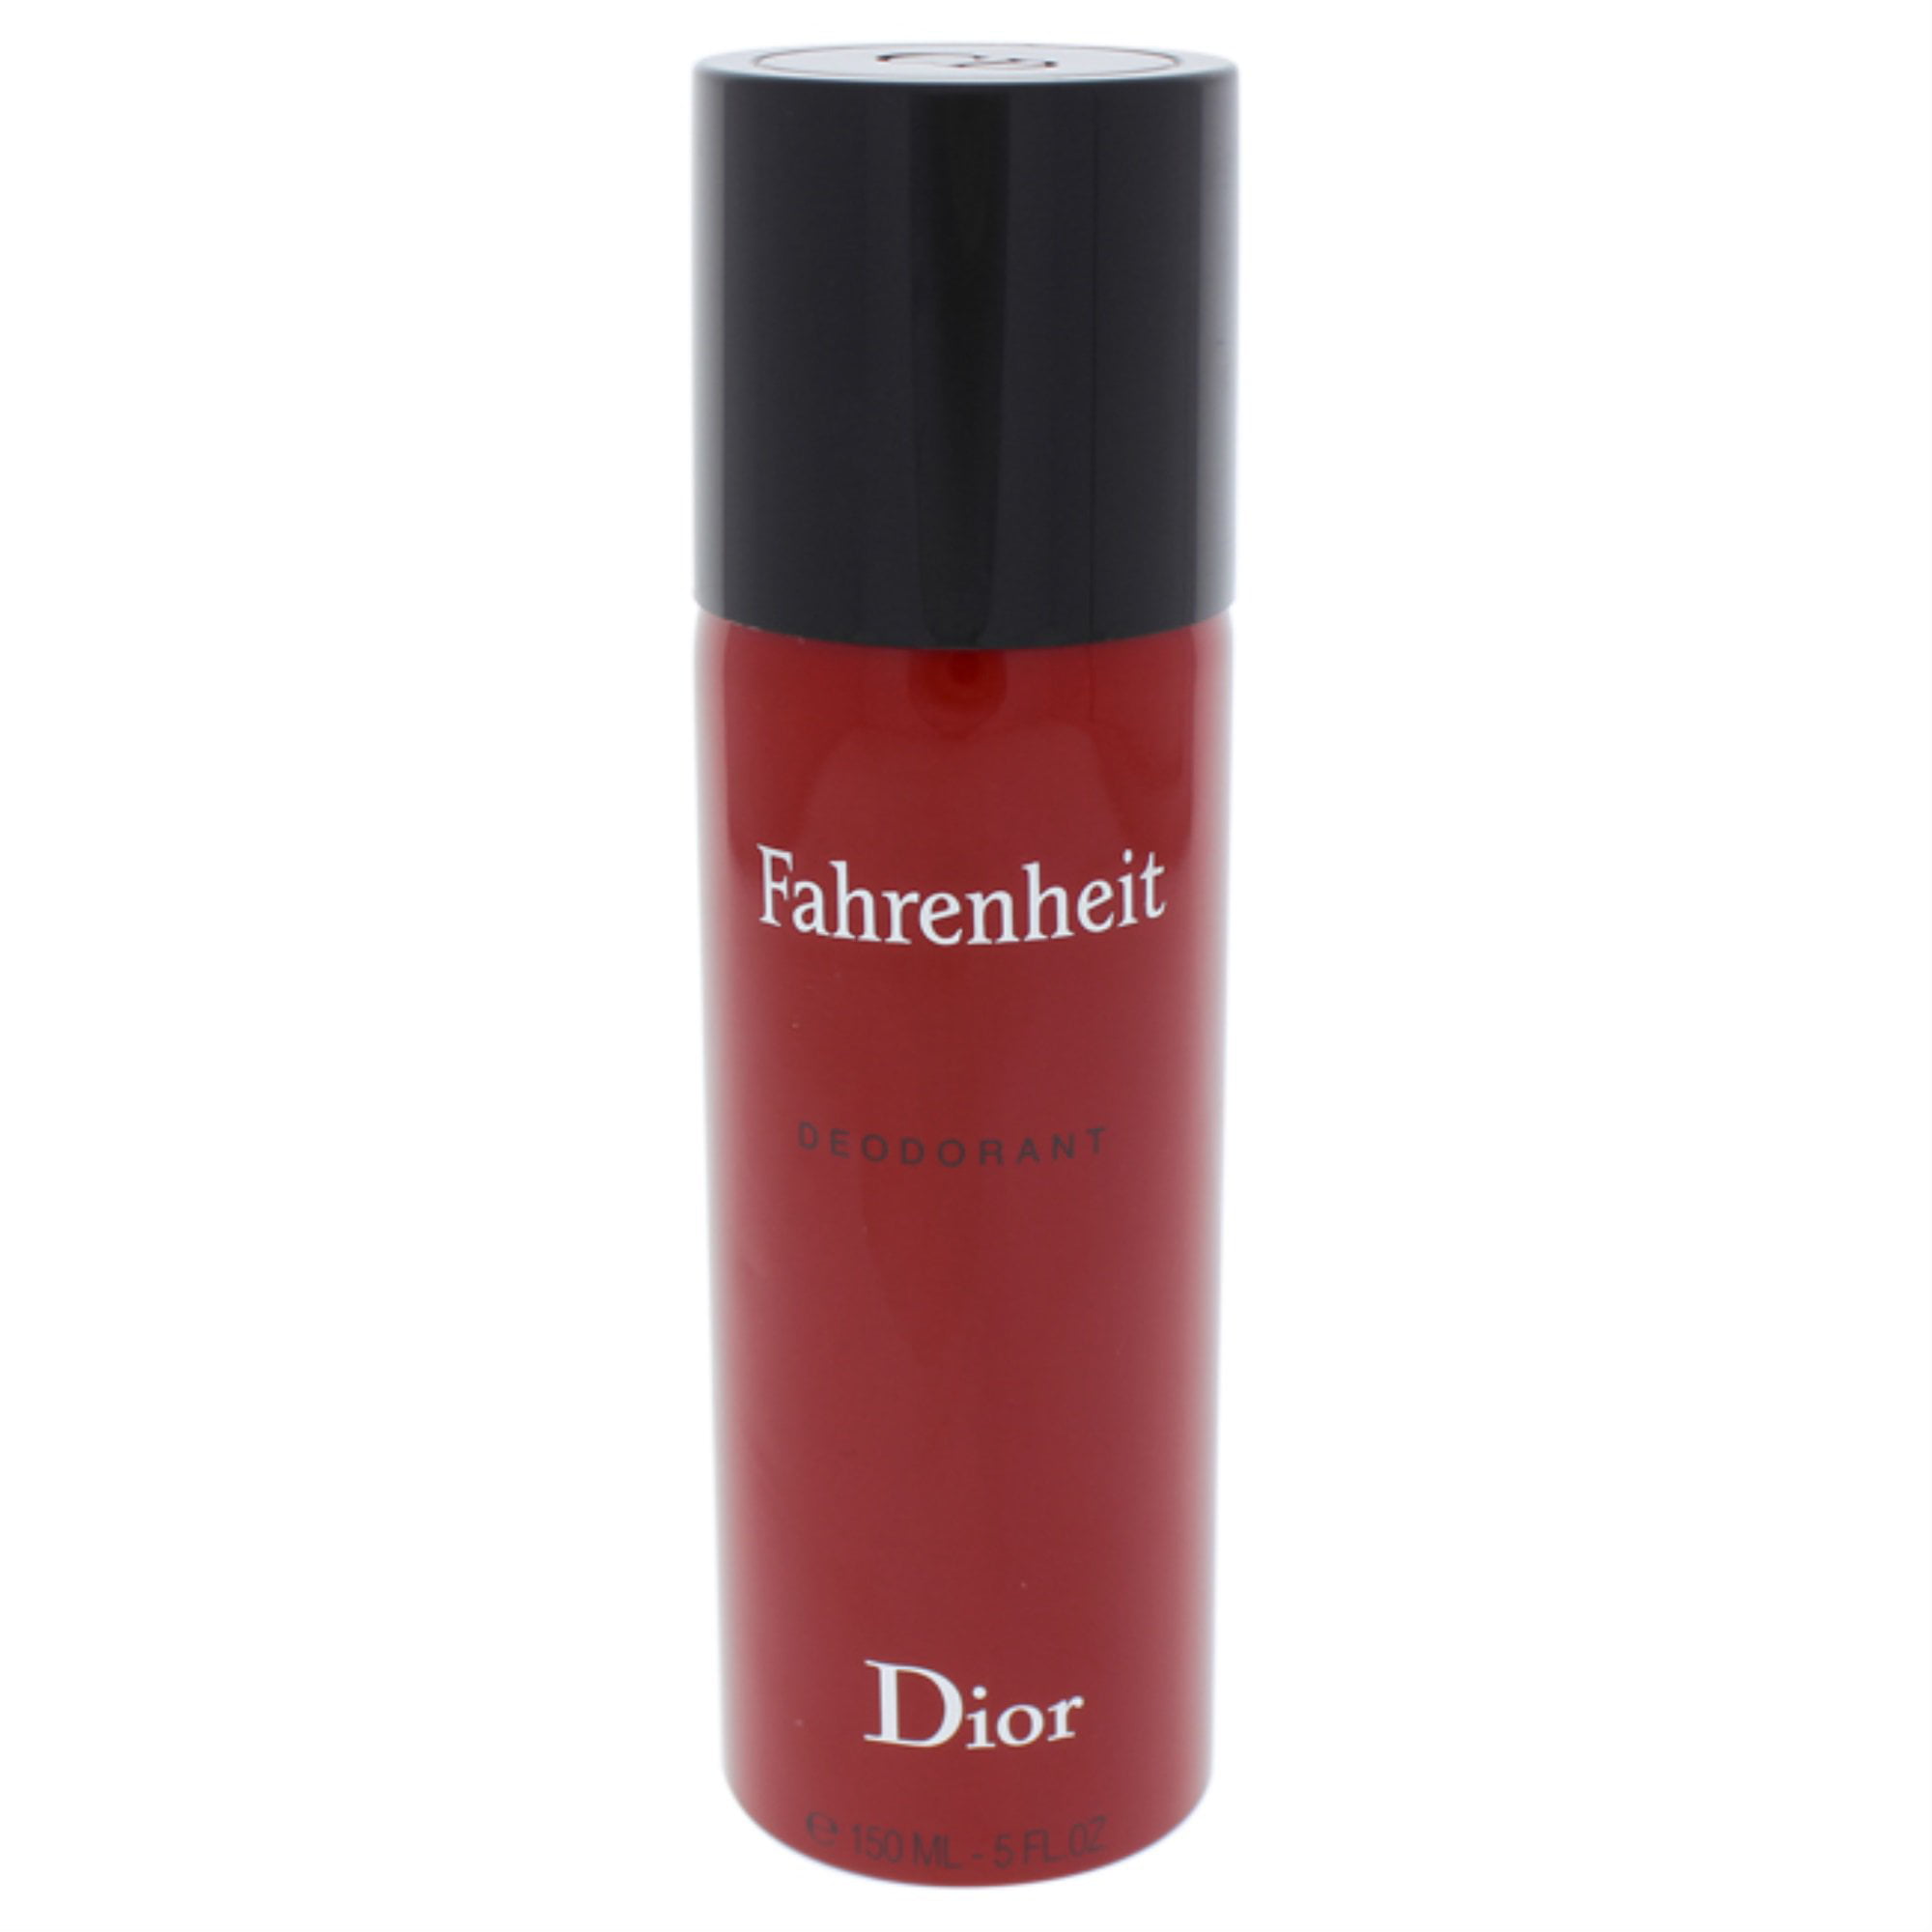 Stjerne Hej hej Fruity Christian Dior Fahrenheit Deodorant Vaporisateur Natural Spray 150 ml / 5  oz - Walmart.com